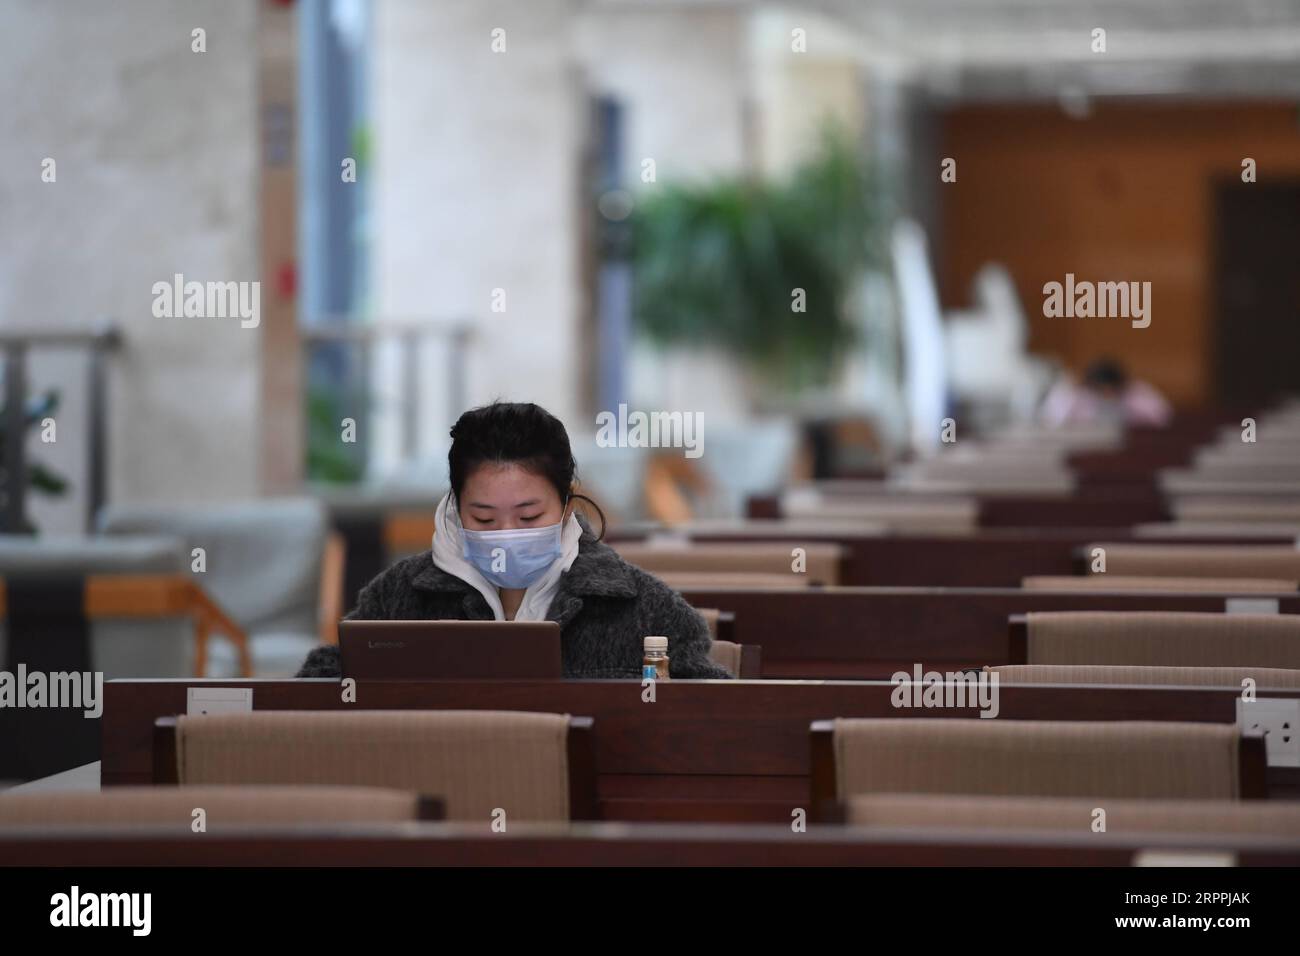 200318 -- CHANGSHA, le 18 mars 2020 -- un citoyen lit à la bibliothèque de Changsha à Changsha, dans la province du Hunan du centre de la Chine, mars 18. 2020. La bibliothèque de Changsha a rouvert ici au stade primaire avec des mesures prises pour prévenir la propagation de la nouvelle maladie à coronavirus, ou COVID-19. CHINA-HUNAN-CHANGSHA-COVID-19-LIBRARY-REVEROUING CN XUEXYUGE PUBLICATIONXNOTXINXCHN Banque D'Images